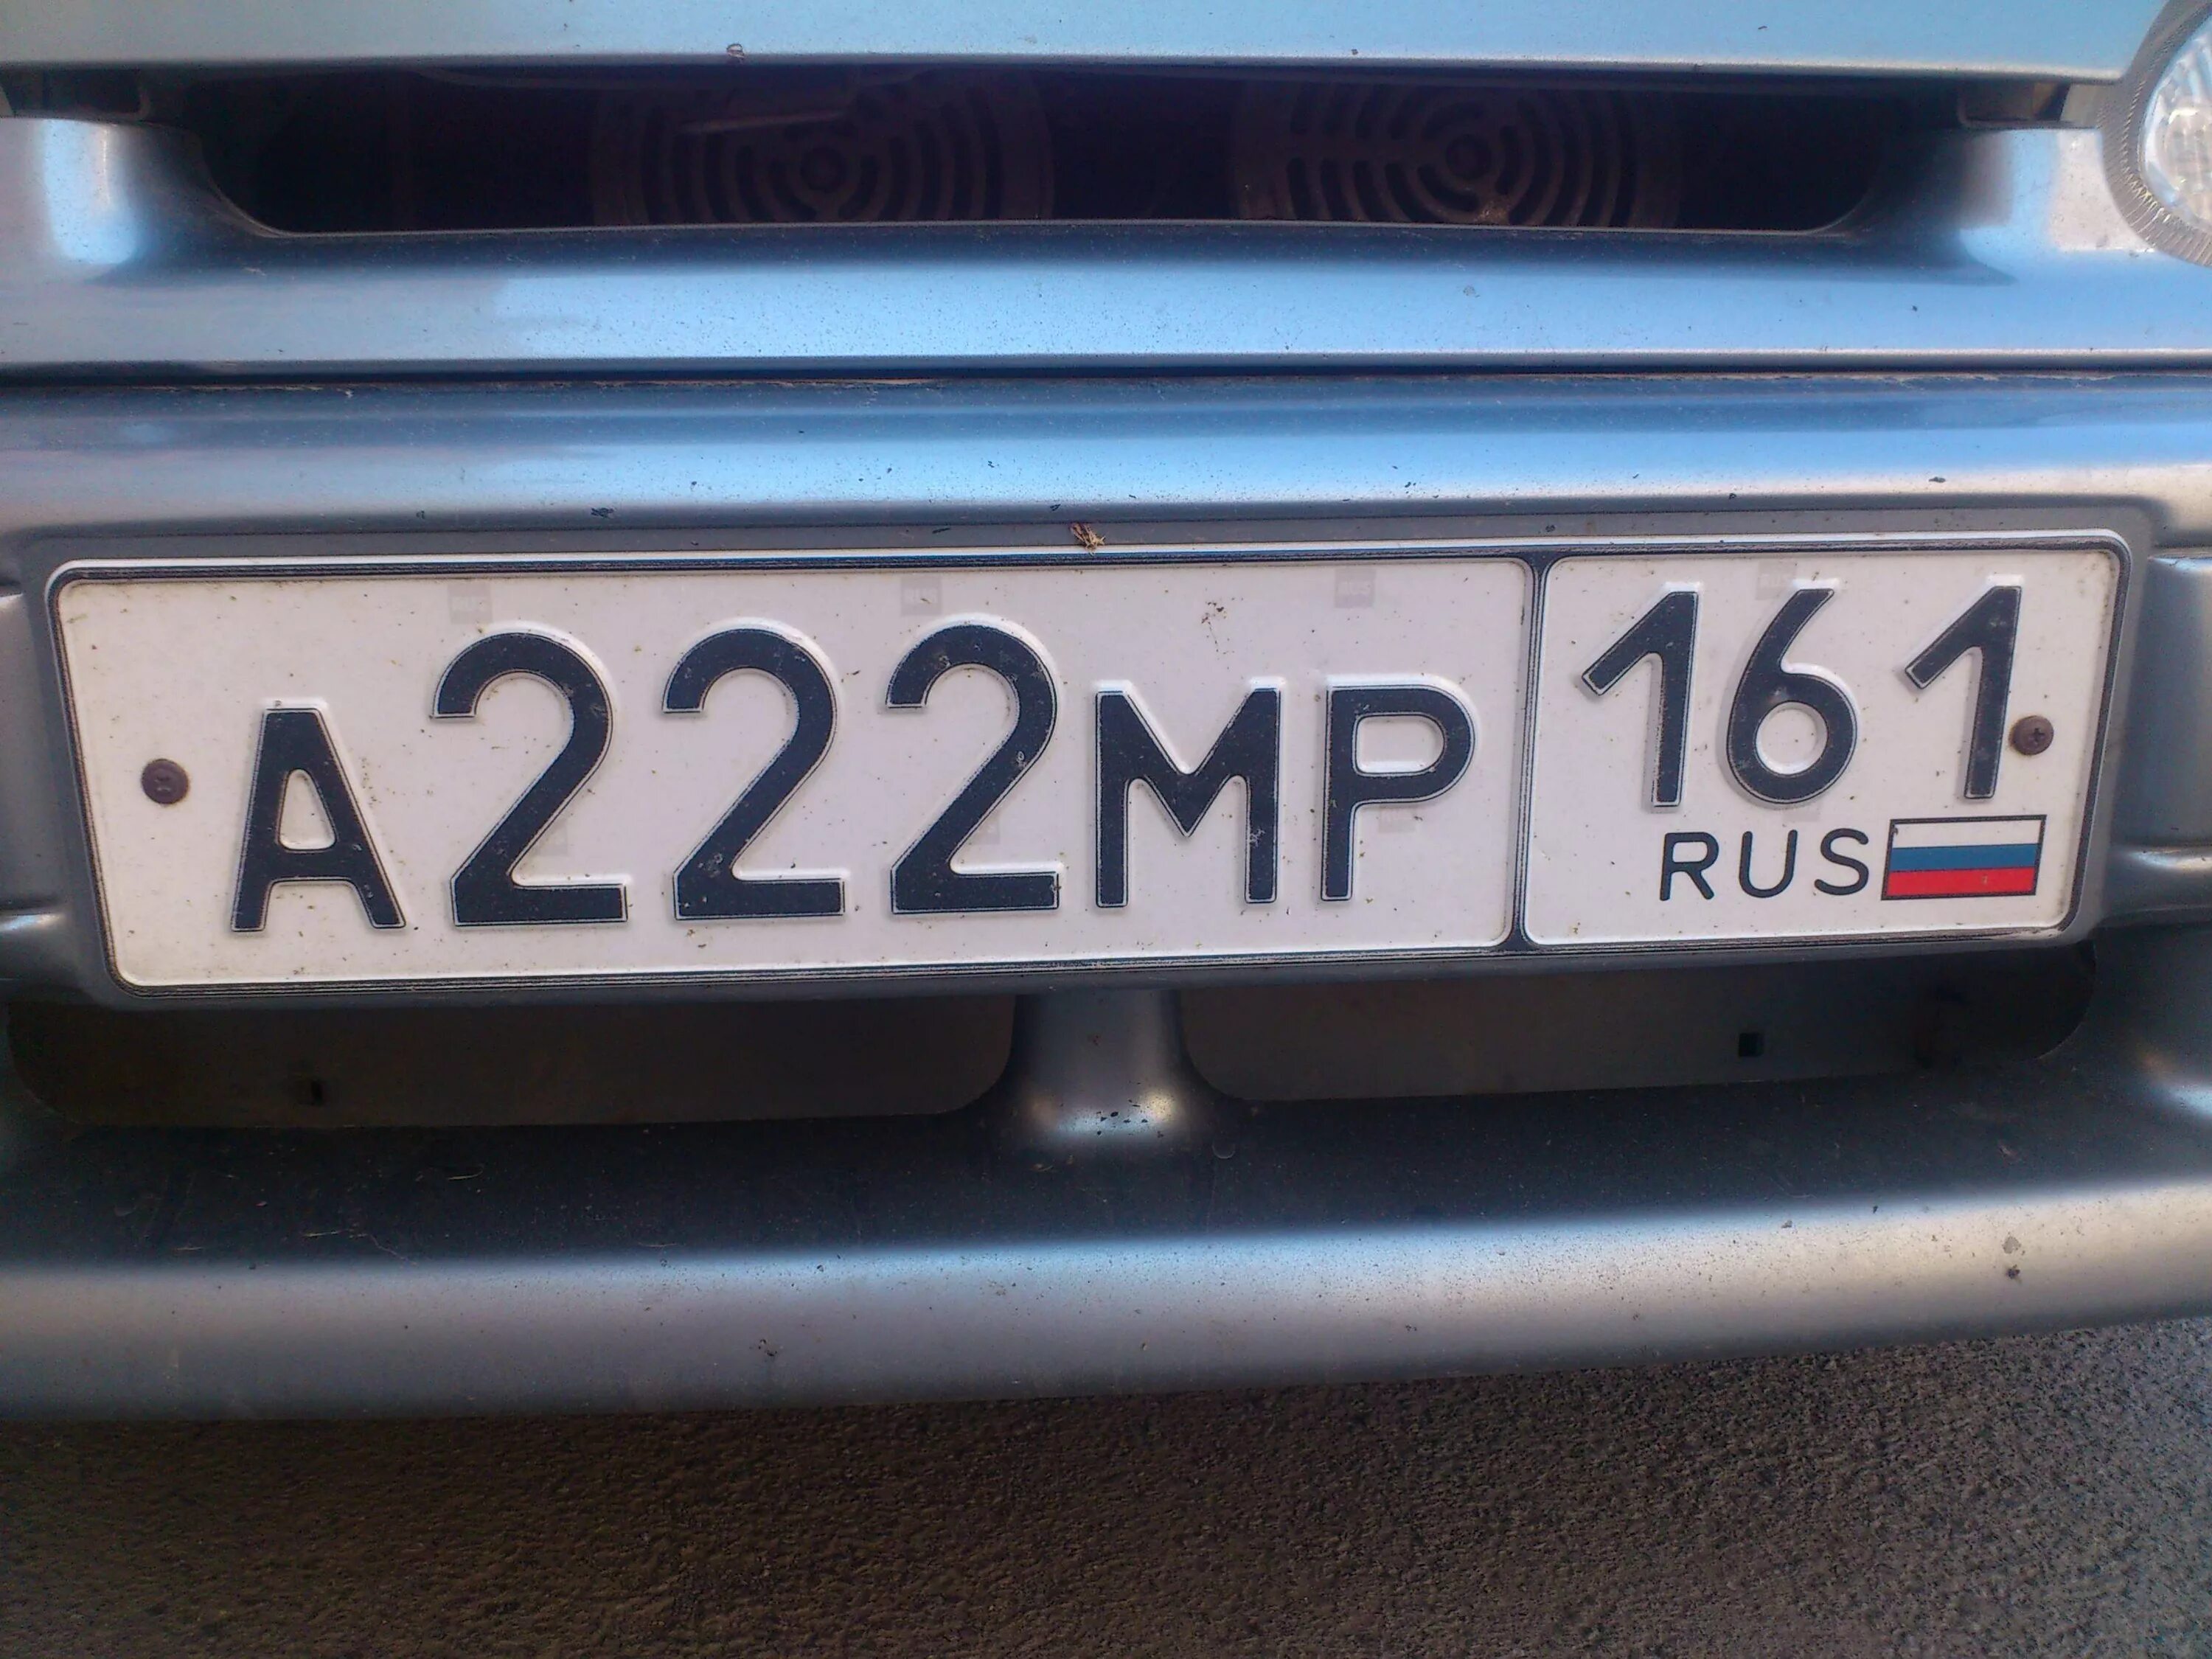 Госномер это. Автомобильные номера. Российские номера машин. Номерные знаки на авто. Государственный номер автомобиля.